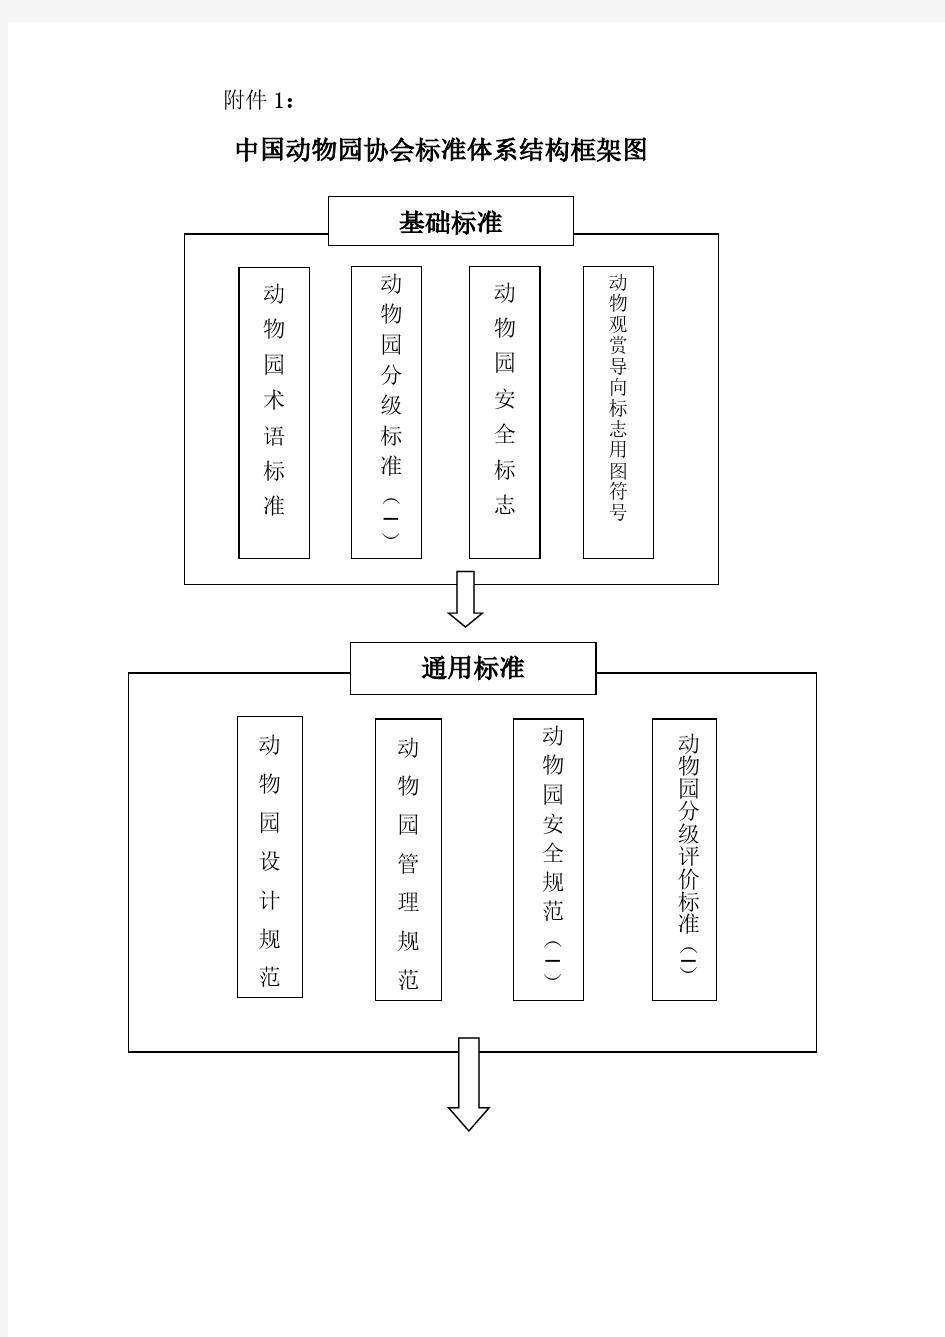 中国动物园协会标准体系结构框架图通用标准基础标准